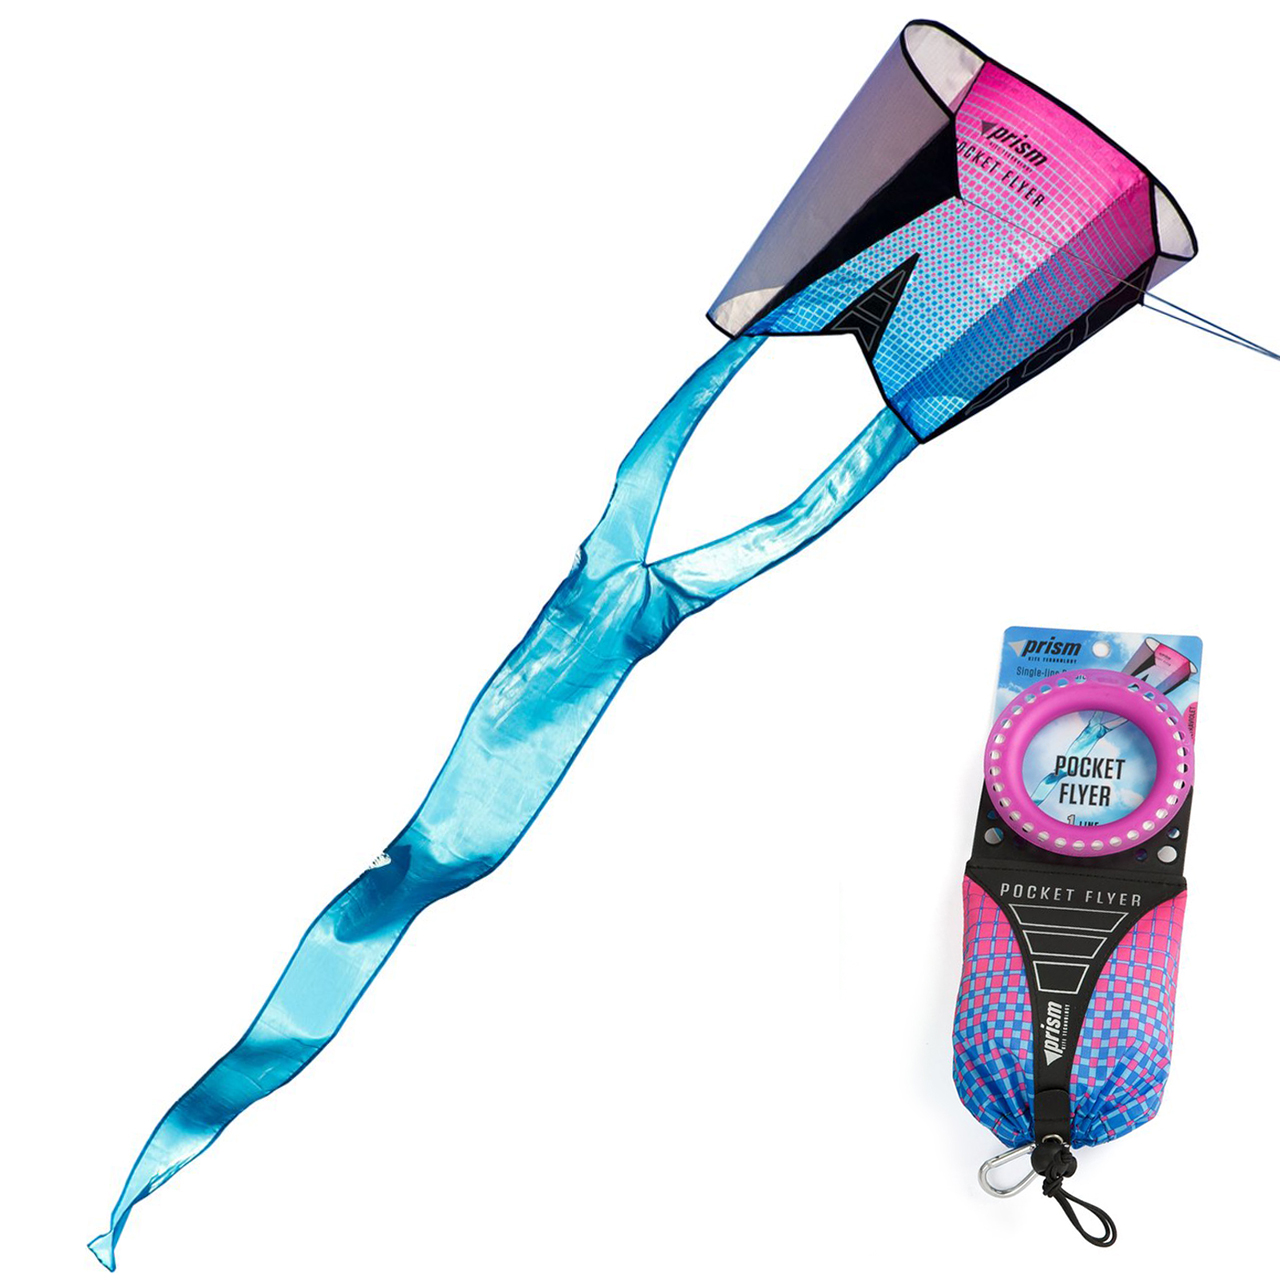 Prism-Pocket-Flyer-Sled-ultraviolet-Einleiner-Taschen-Drache-kaufen-lafueliki